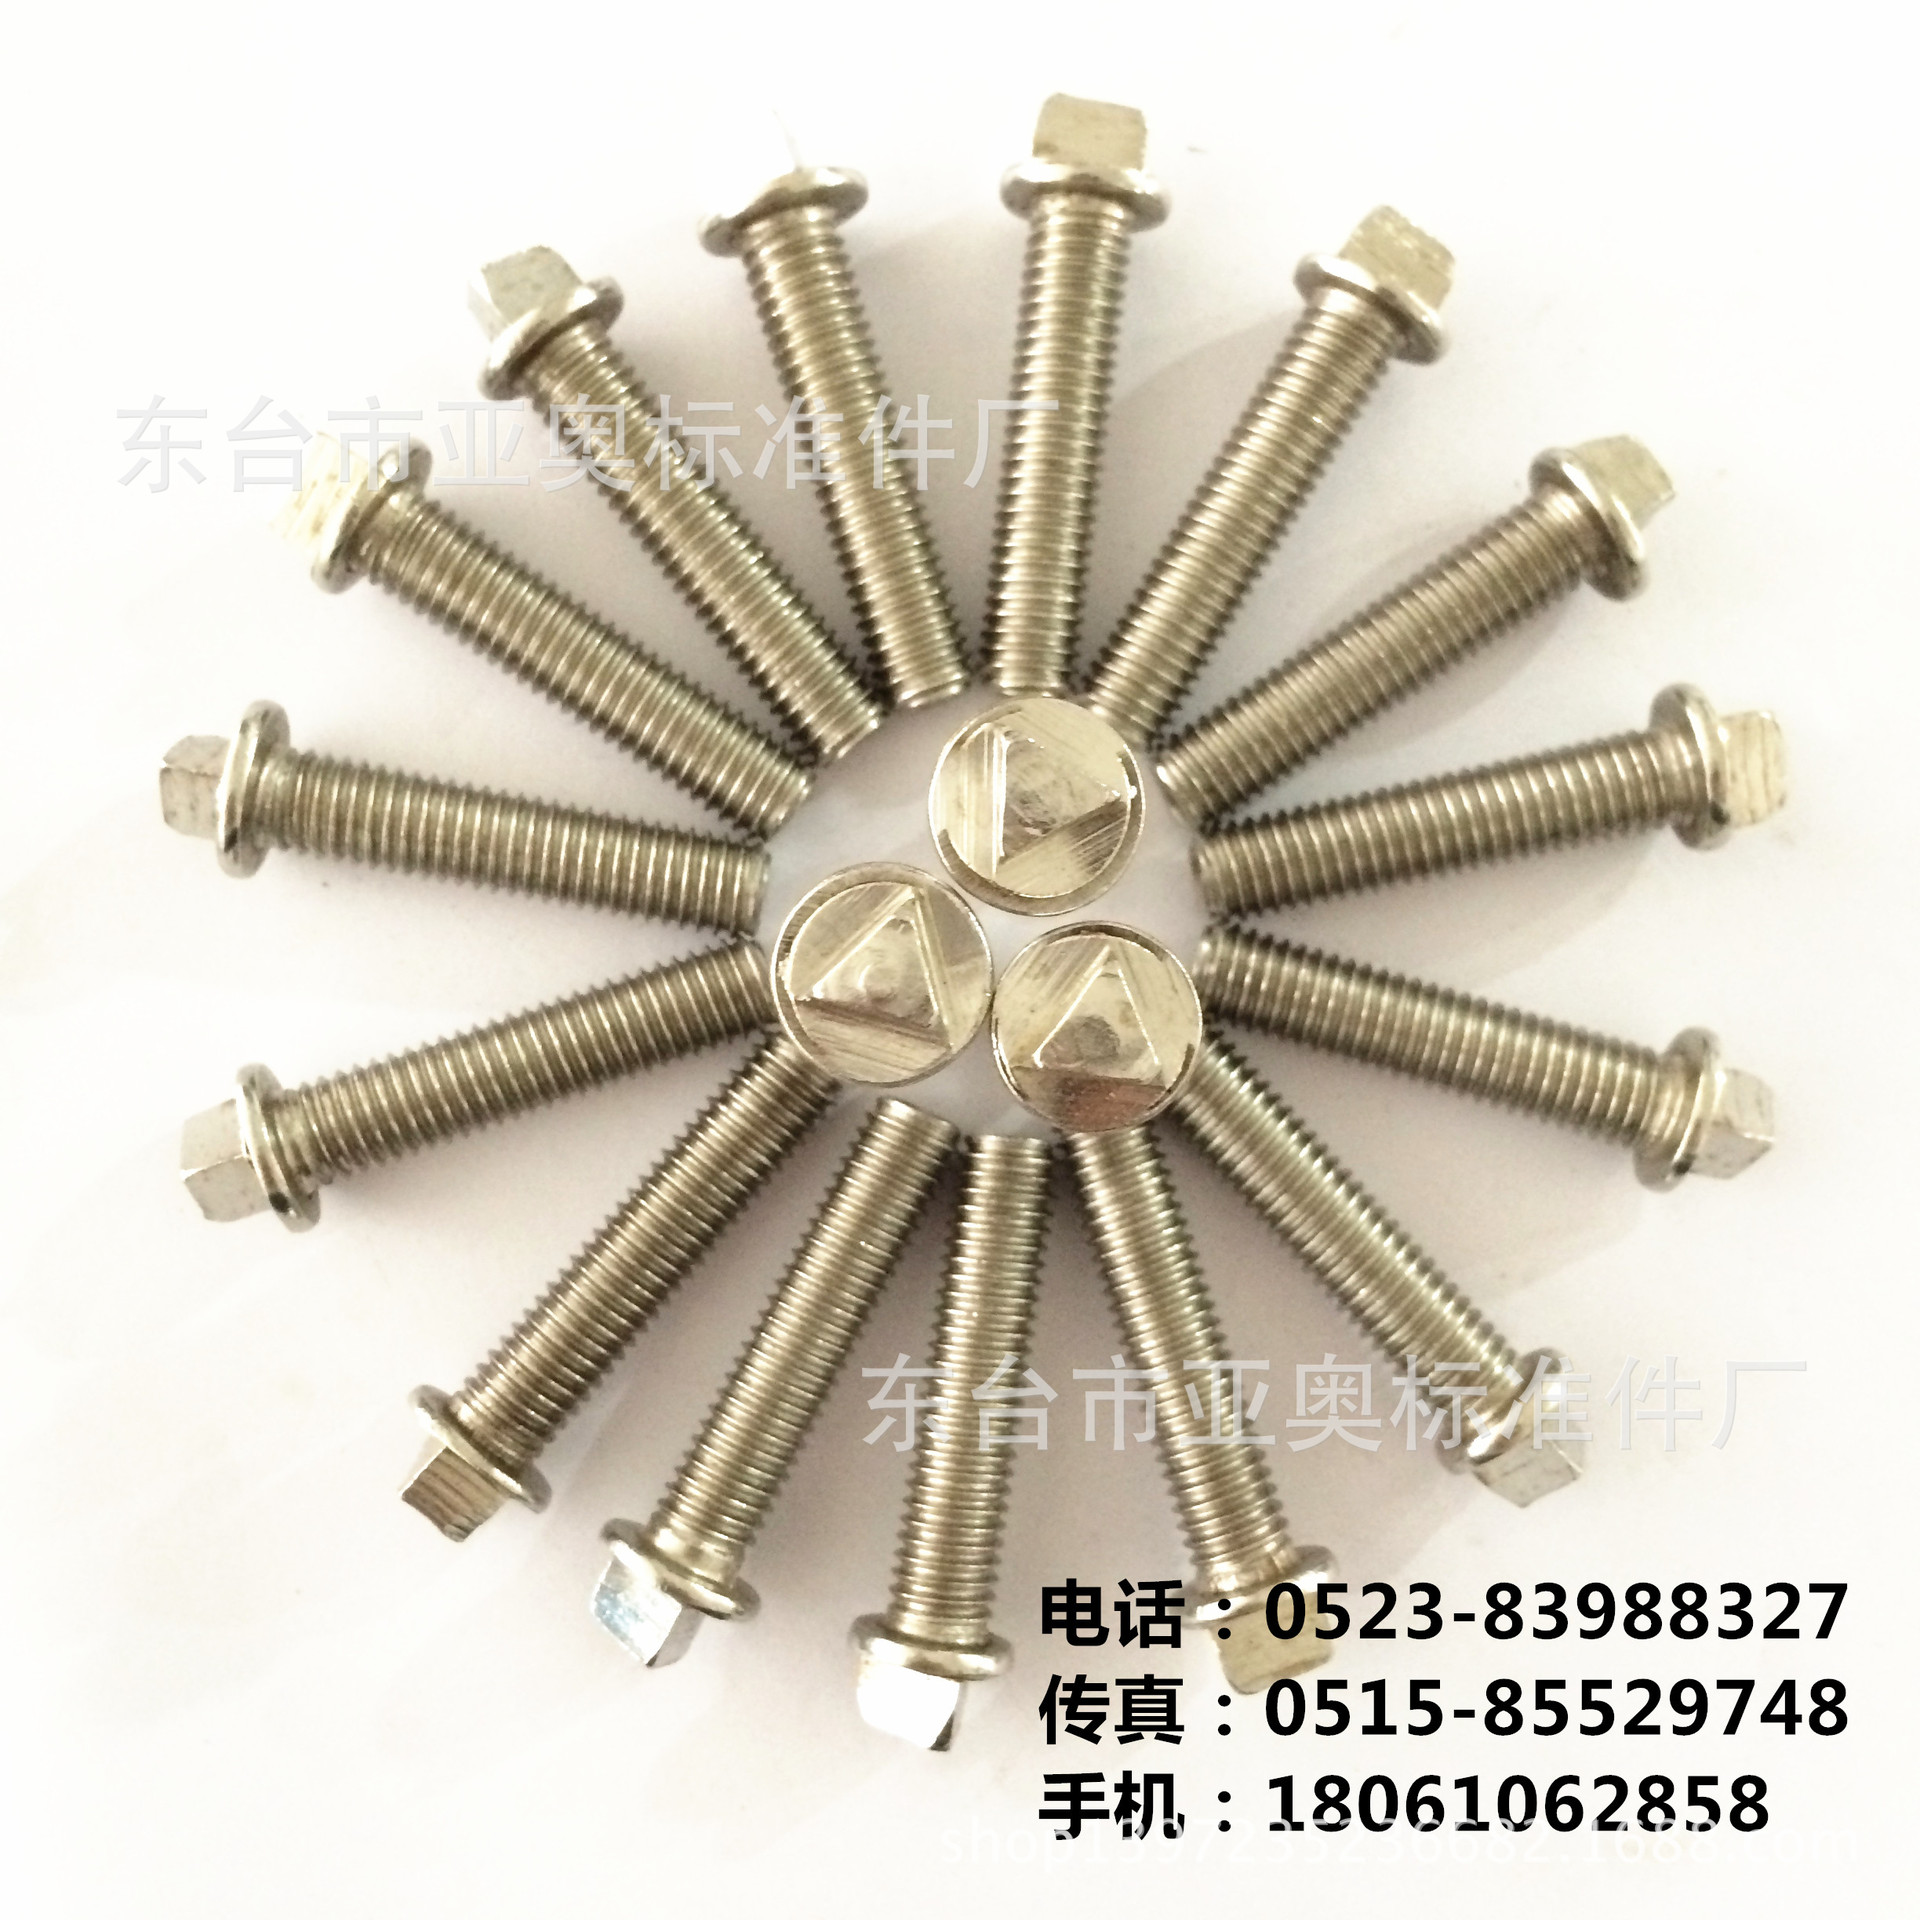 产品介绍 名称 三角螺丝 品牌 亚奥 材质 不锈钢304 201 铜 铁 规格